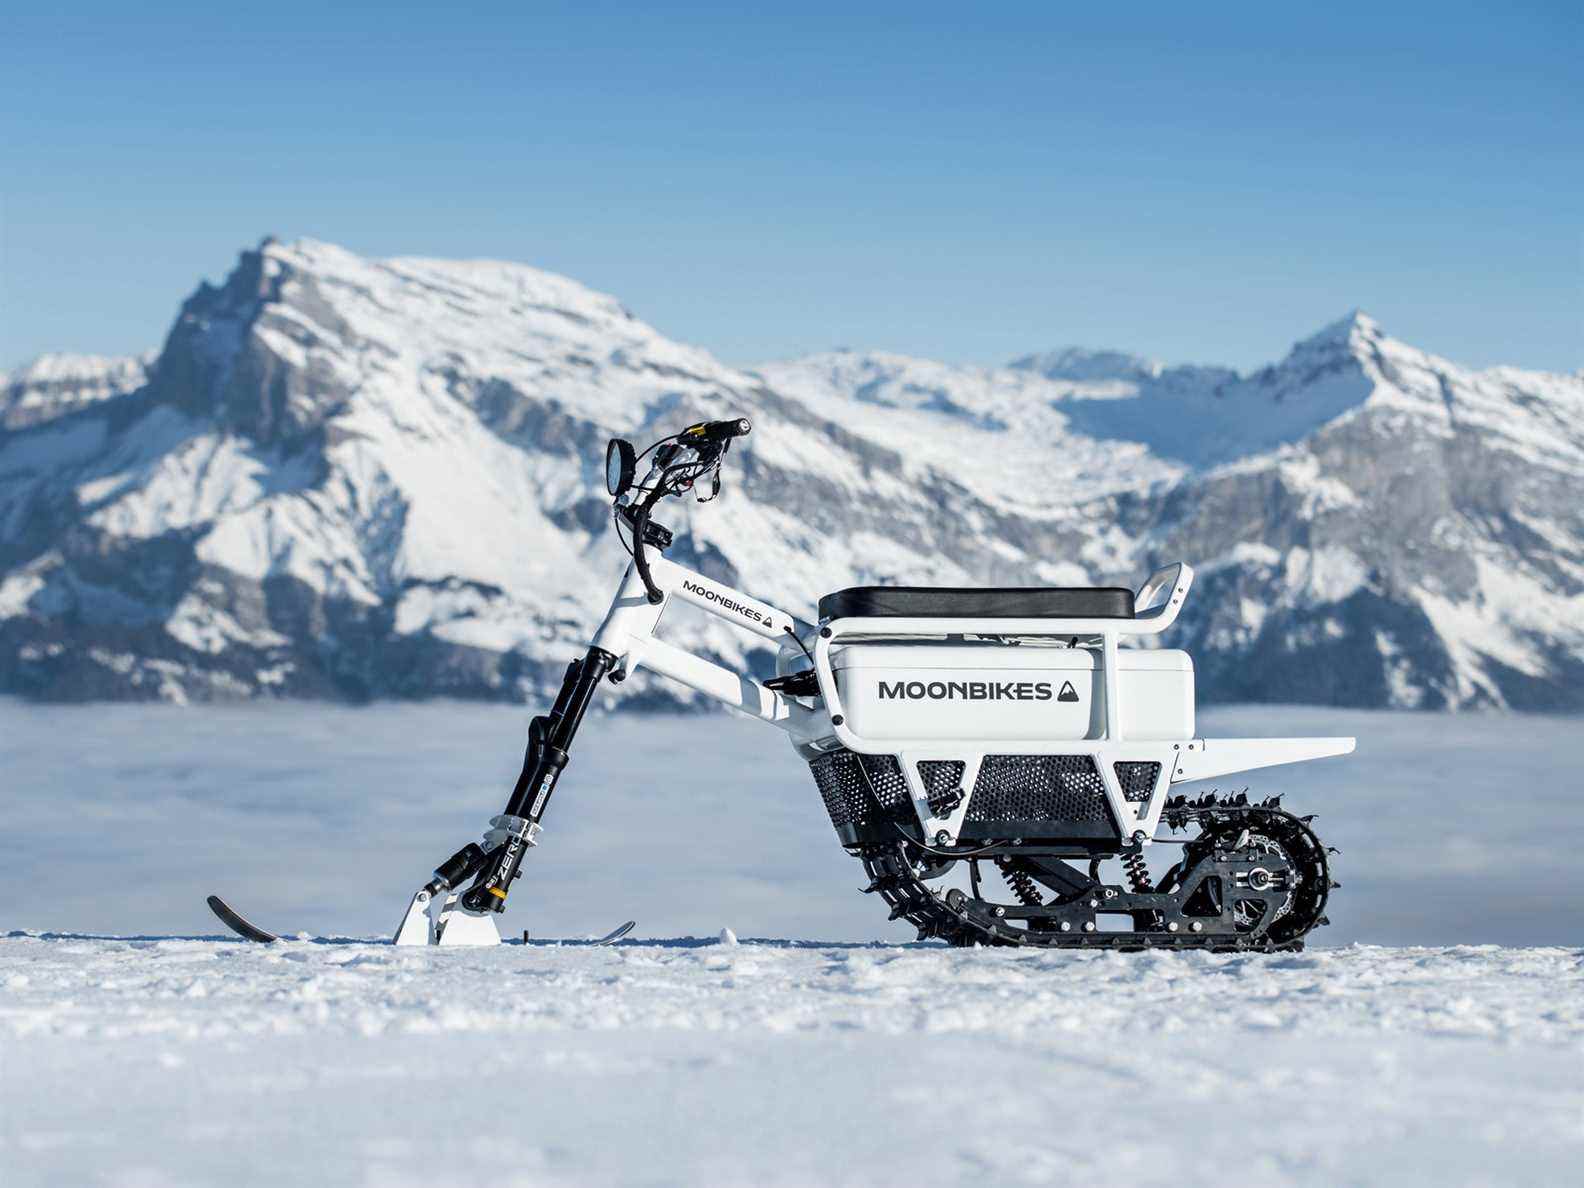 Moonbike garé dans la neige avec des montagnes enneigées en arrière-plan